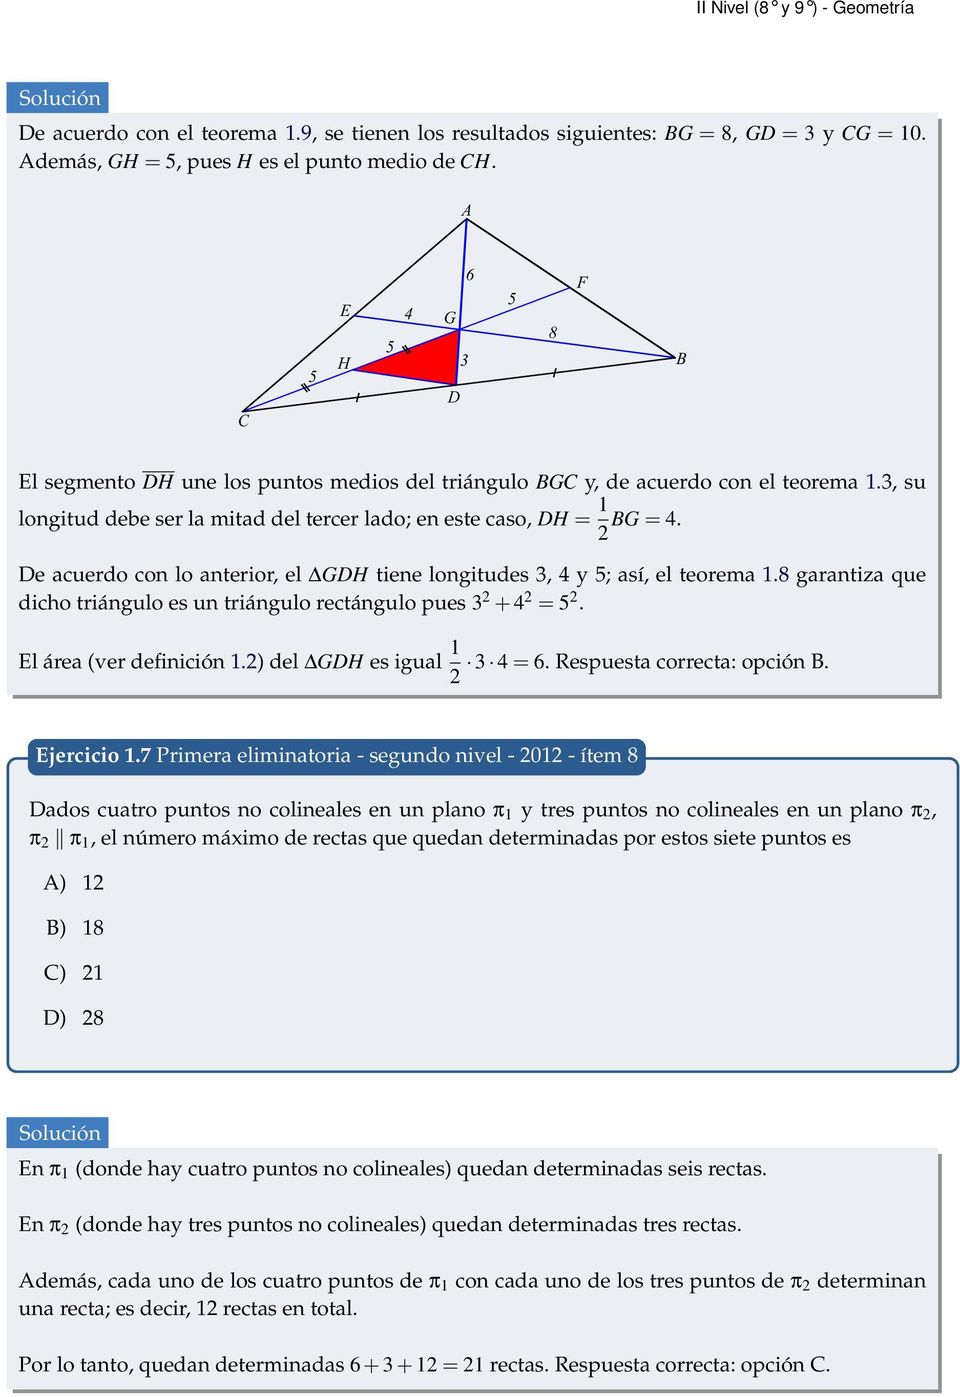 De acuerdo con lo anterior, el GDH tiene longitudes 3, 4 y 5; así, el teorema 1.8 garantiza que dicho triángulo es un triángulo rectángulo pues 3 + 4 = 5. El área (ver definición 1.